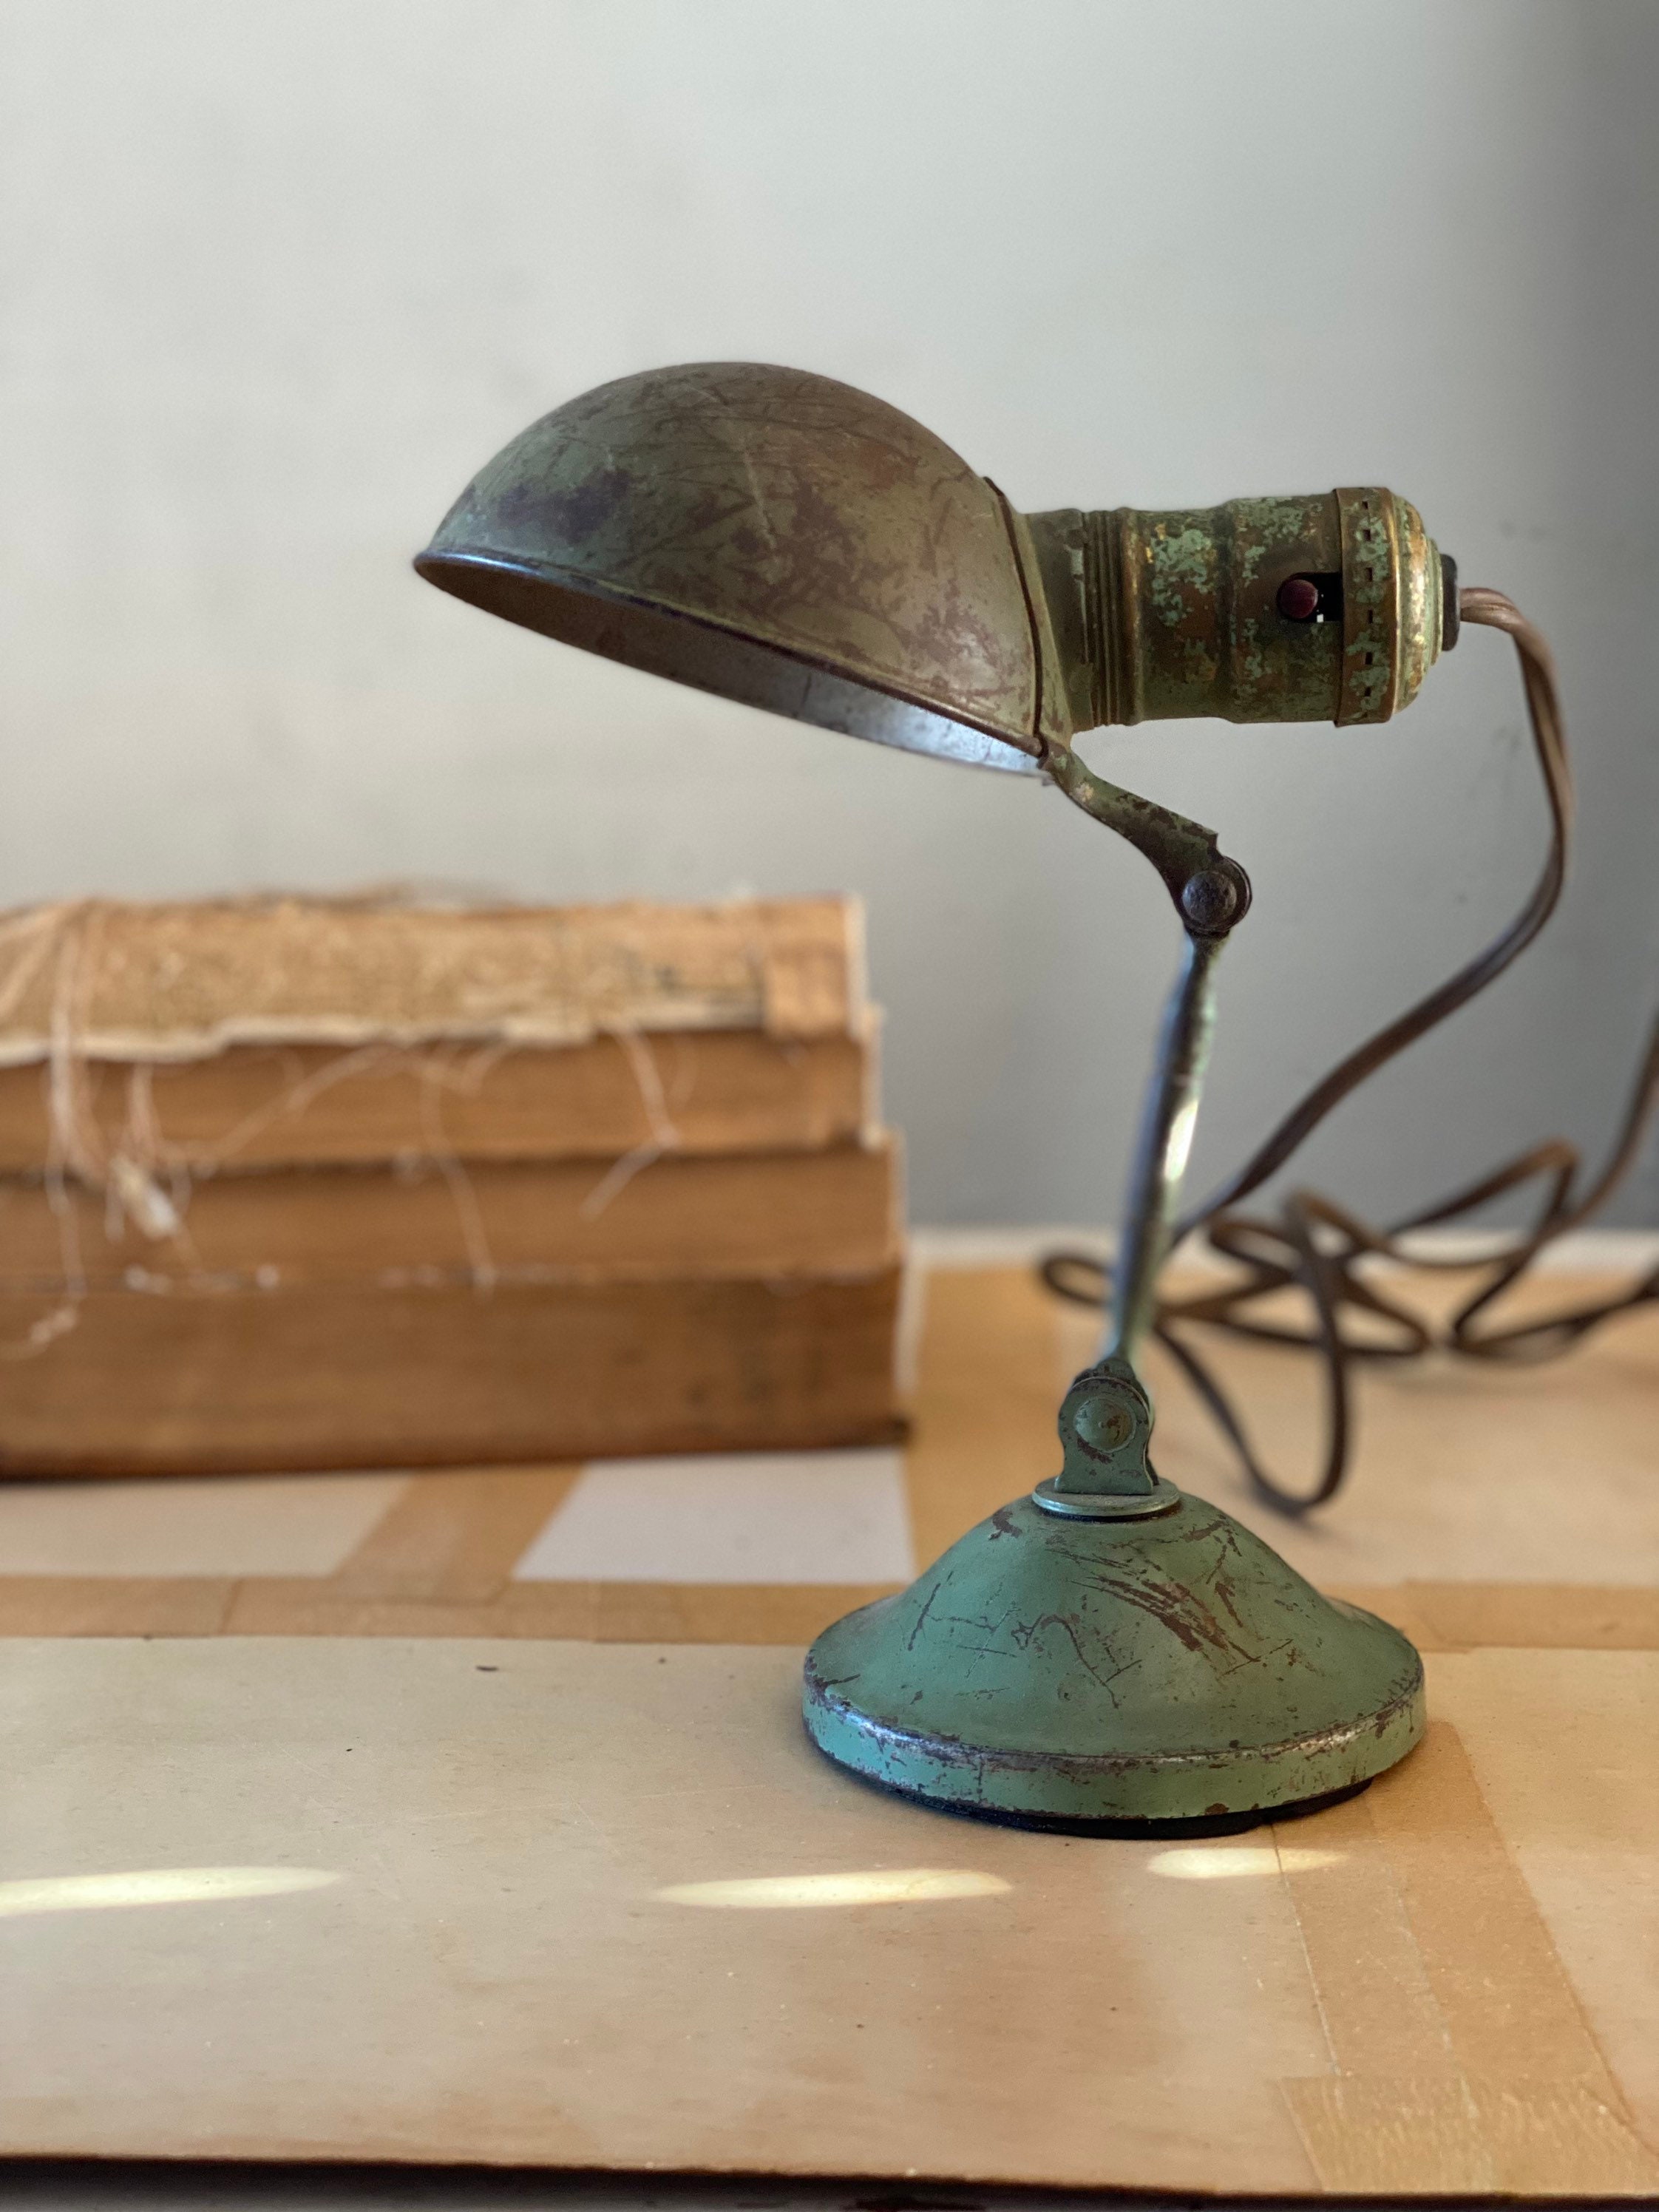 Governable Fortælle Trampe Vintage Articulating Clamp on Green Lamp Gacor Handi Lamp - Etsy